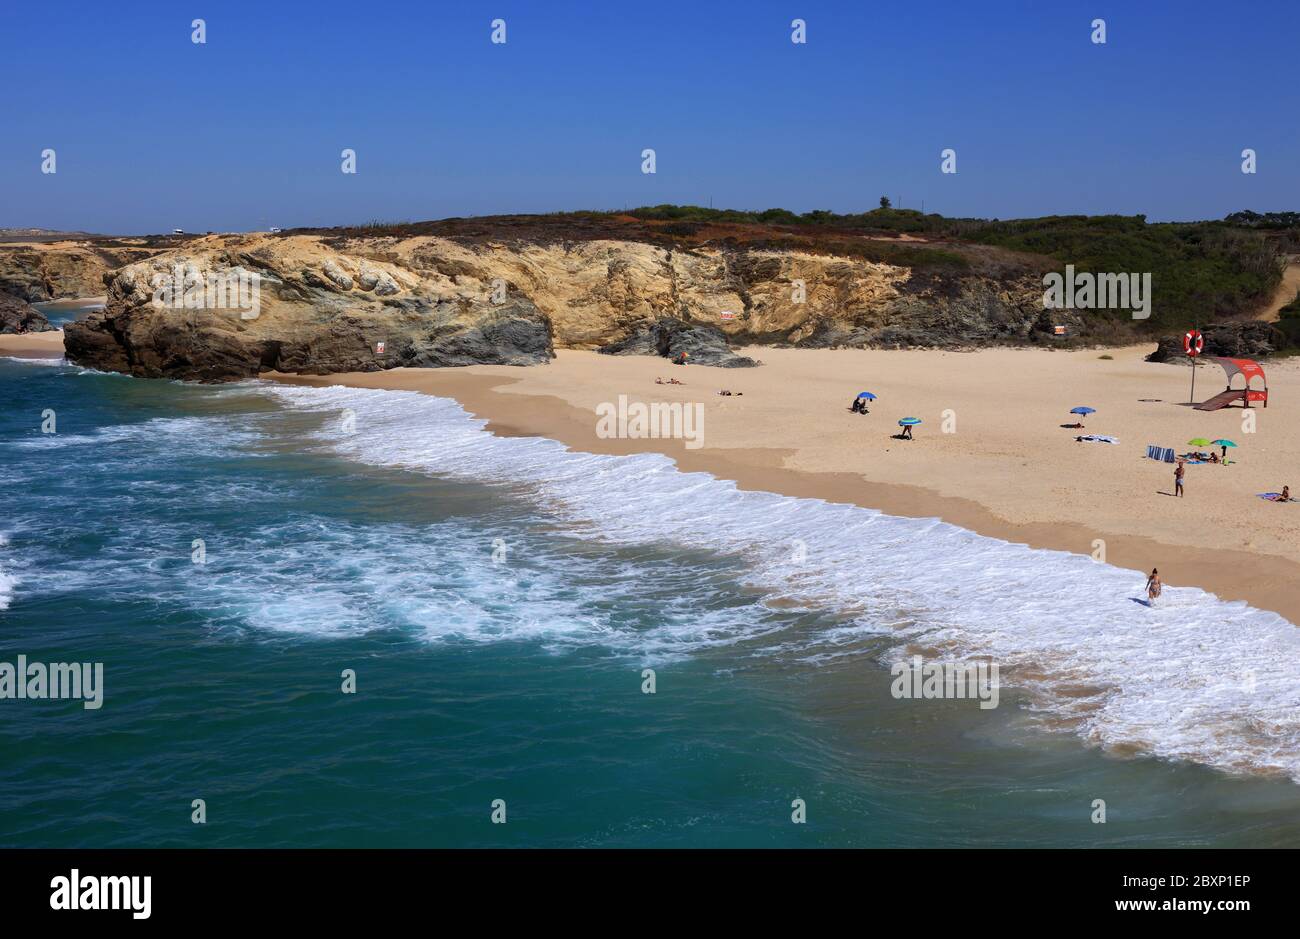 Portugal, Alentejo, Sines. Beautiful, pristine, beach in the picturesque village of Porto Covo on Portugal's Atlantic West Coast. Stock Photo